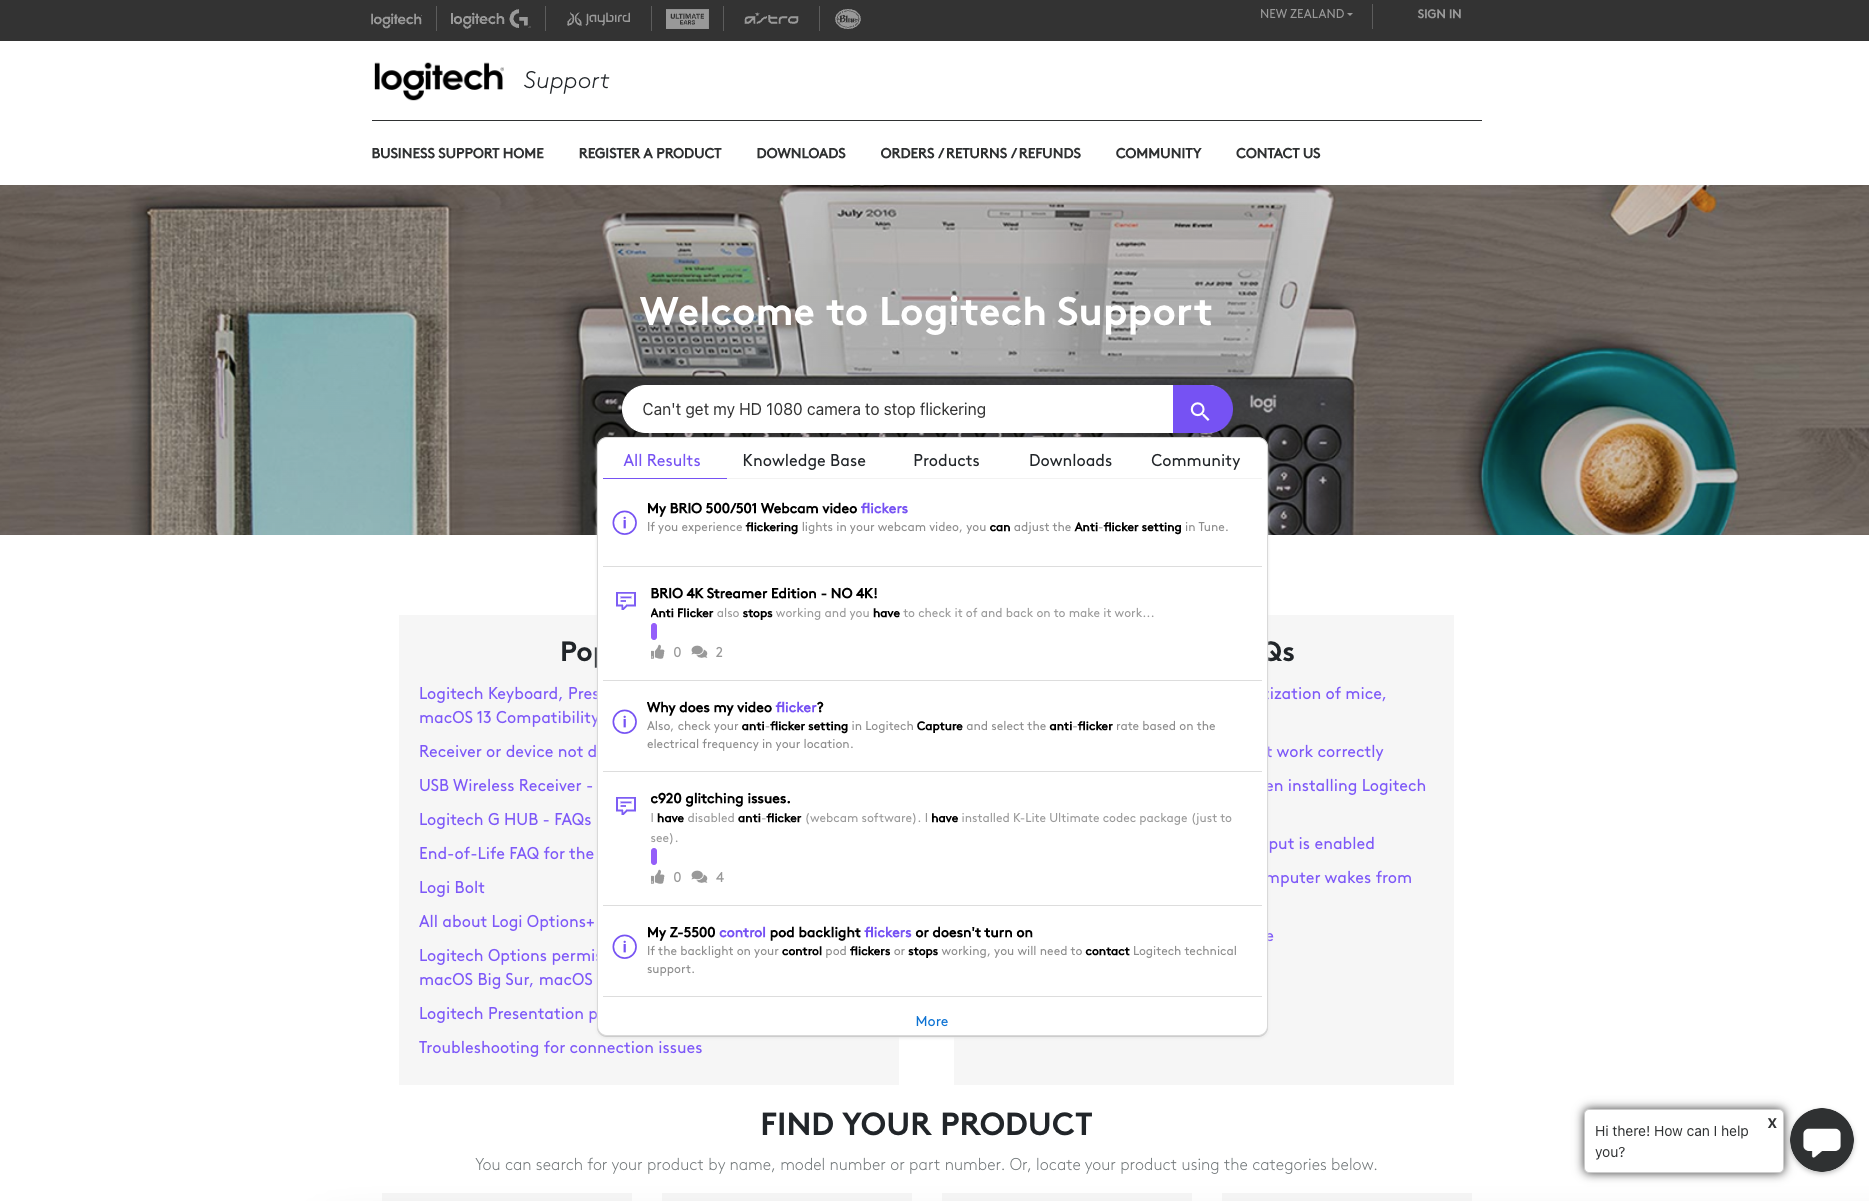 A screenshot of the Logitech Support Center